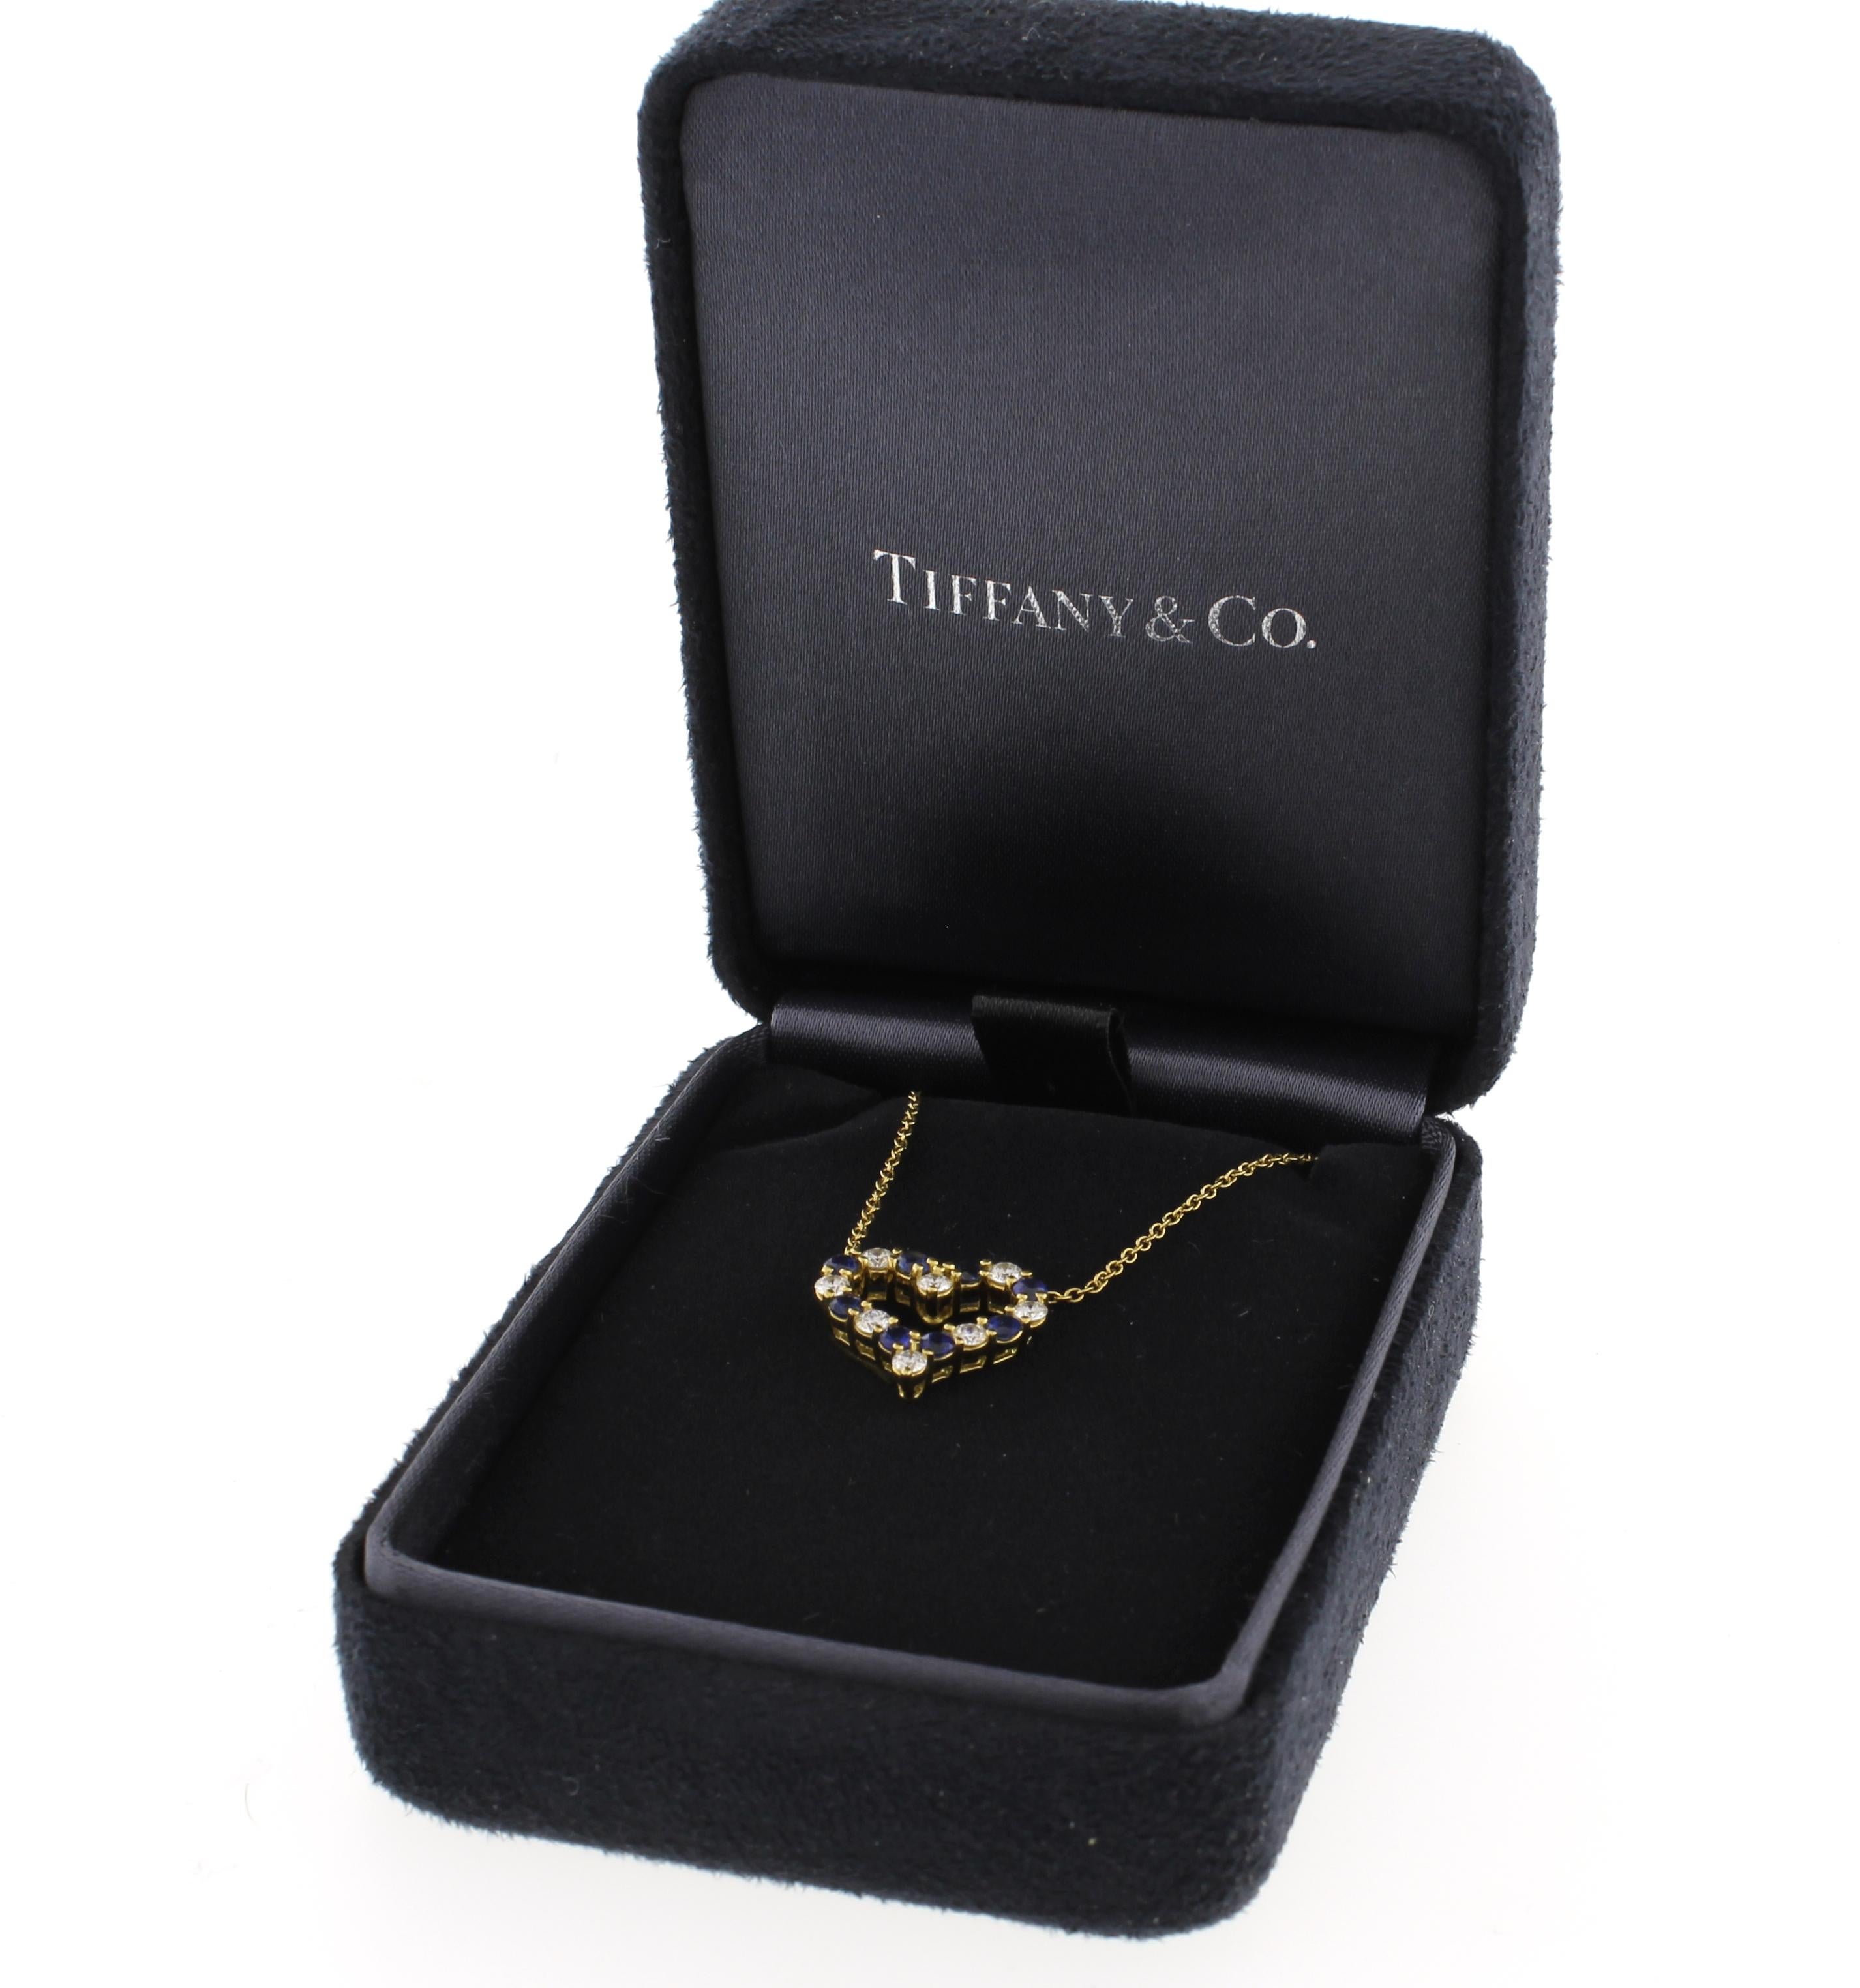 tiffany and co heart pendant